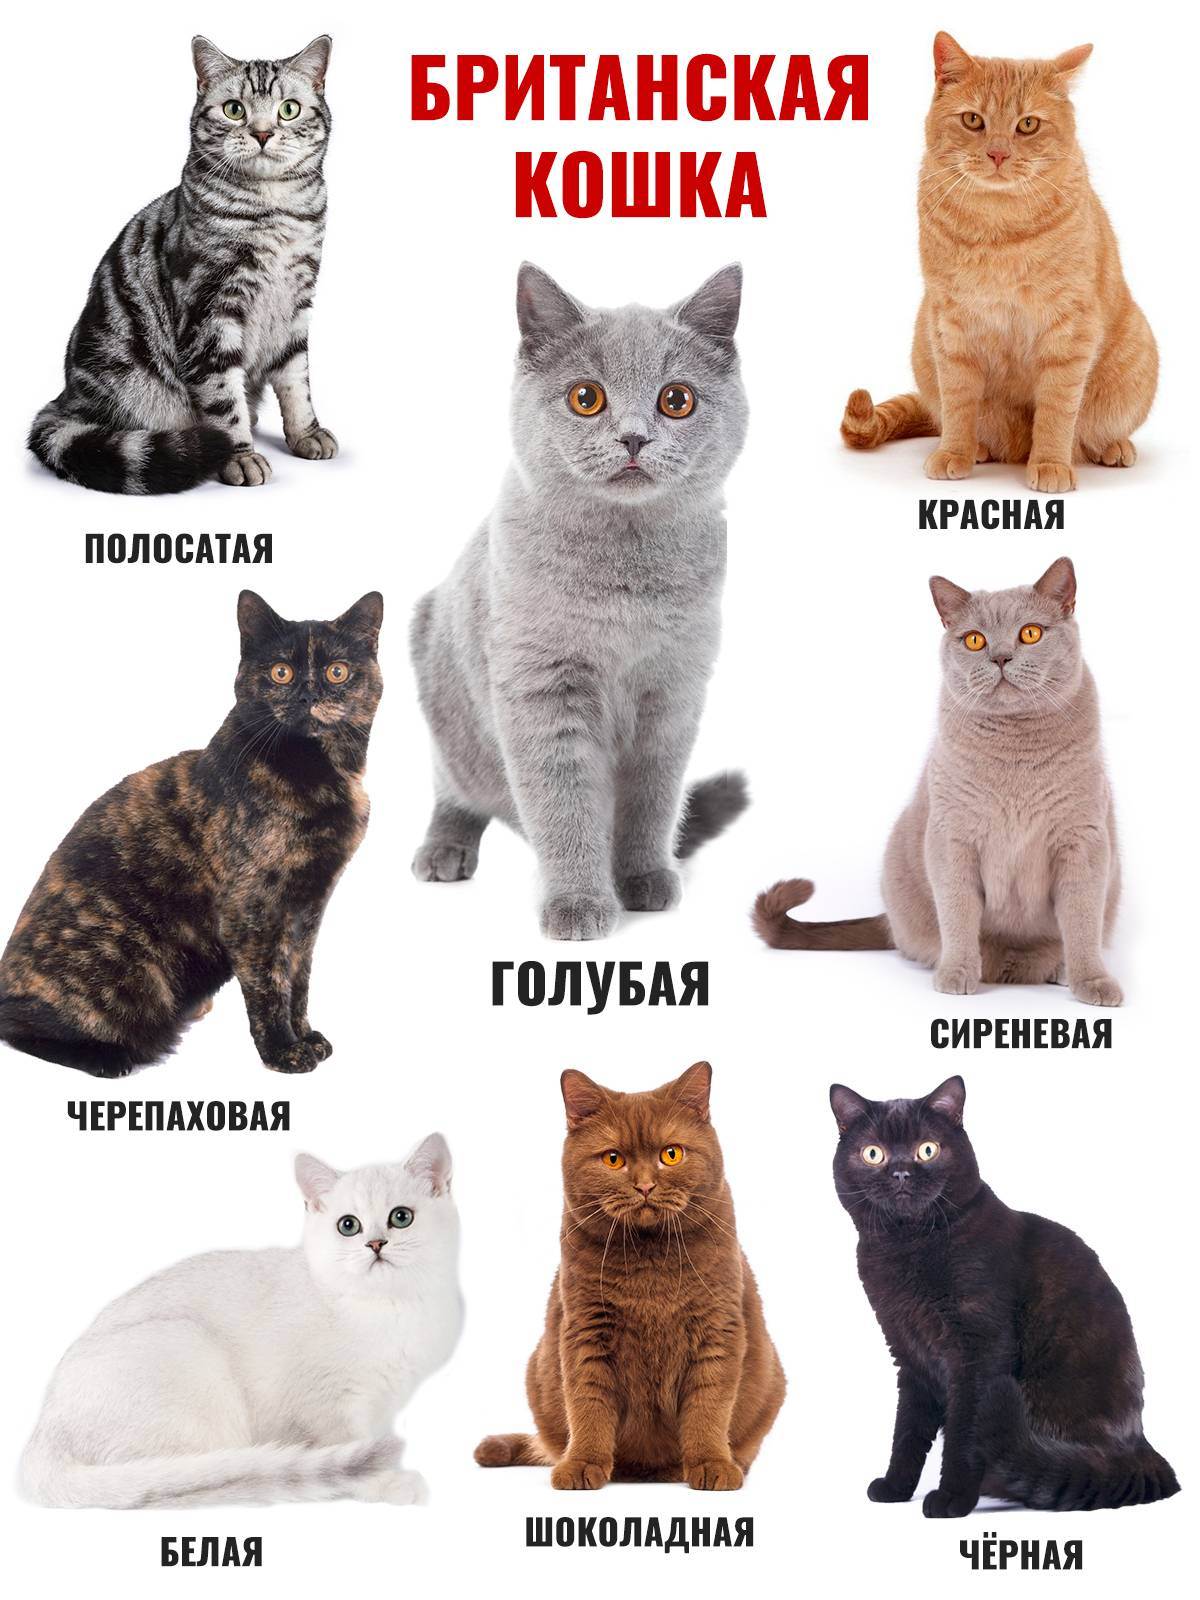 Особенности характера британских кошек